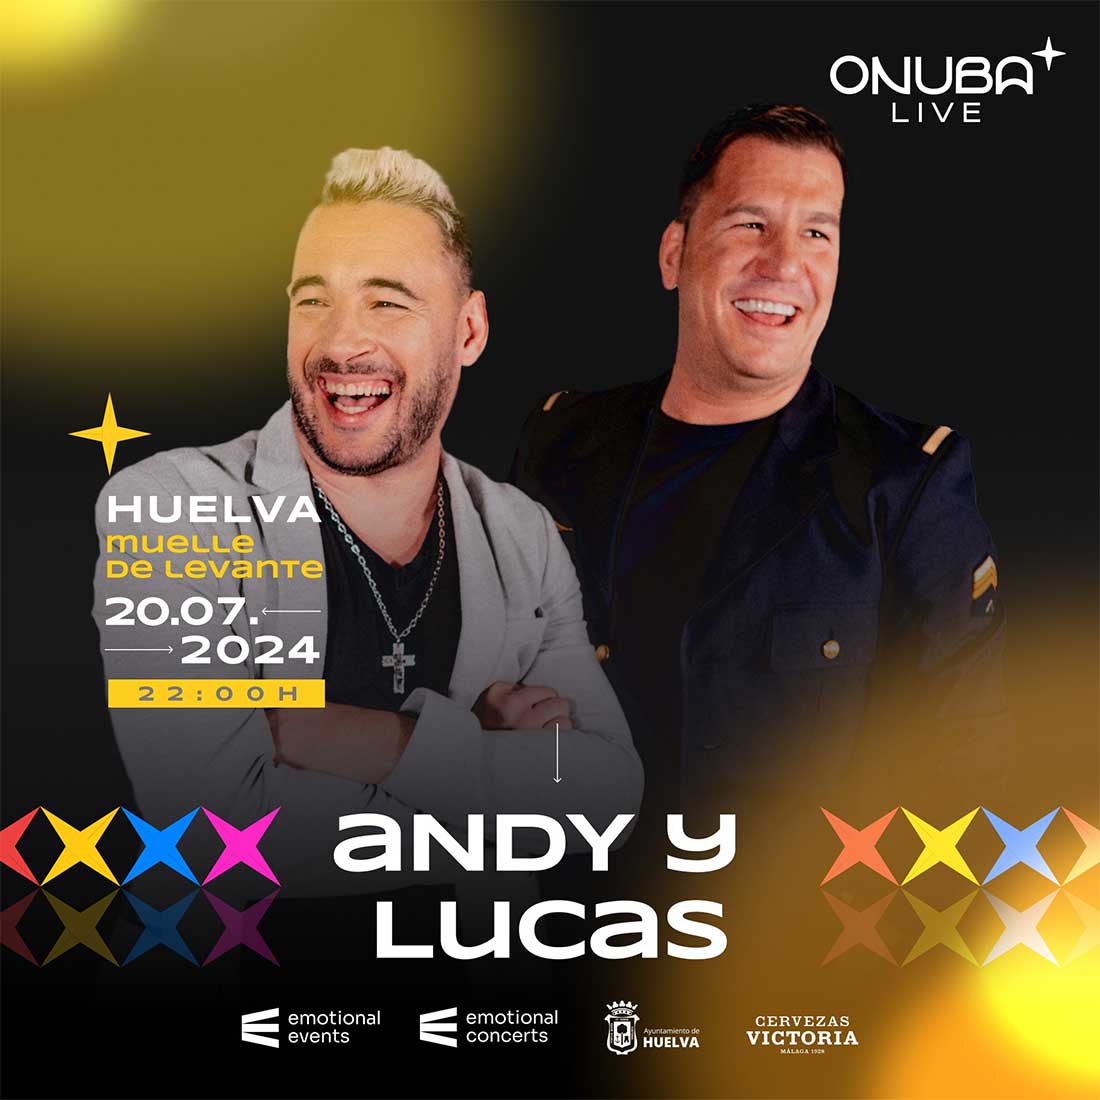 andy y lucas Huelva 20 de julio Muelle de Levante Festival Onuba Live 2024